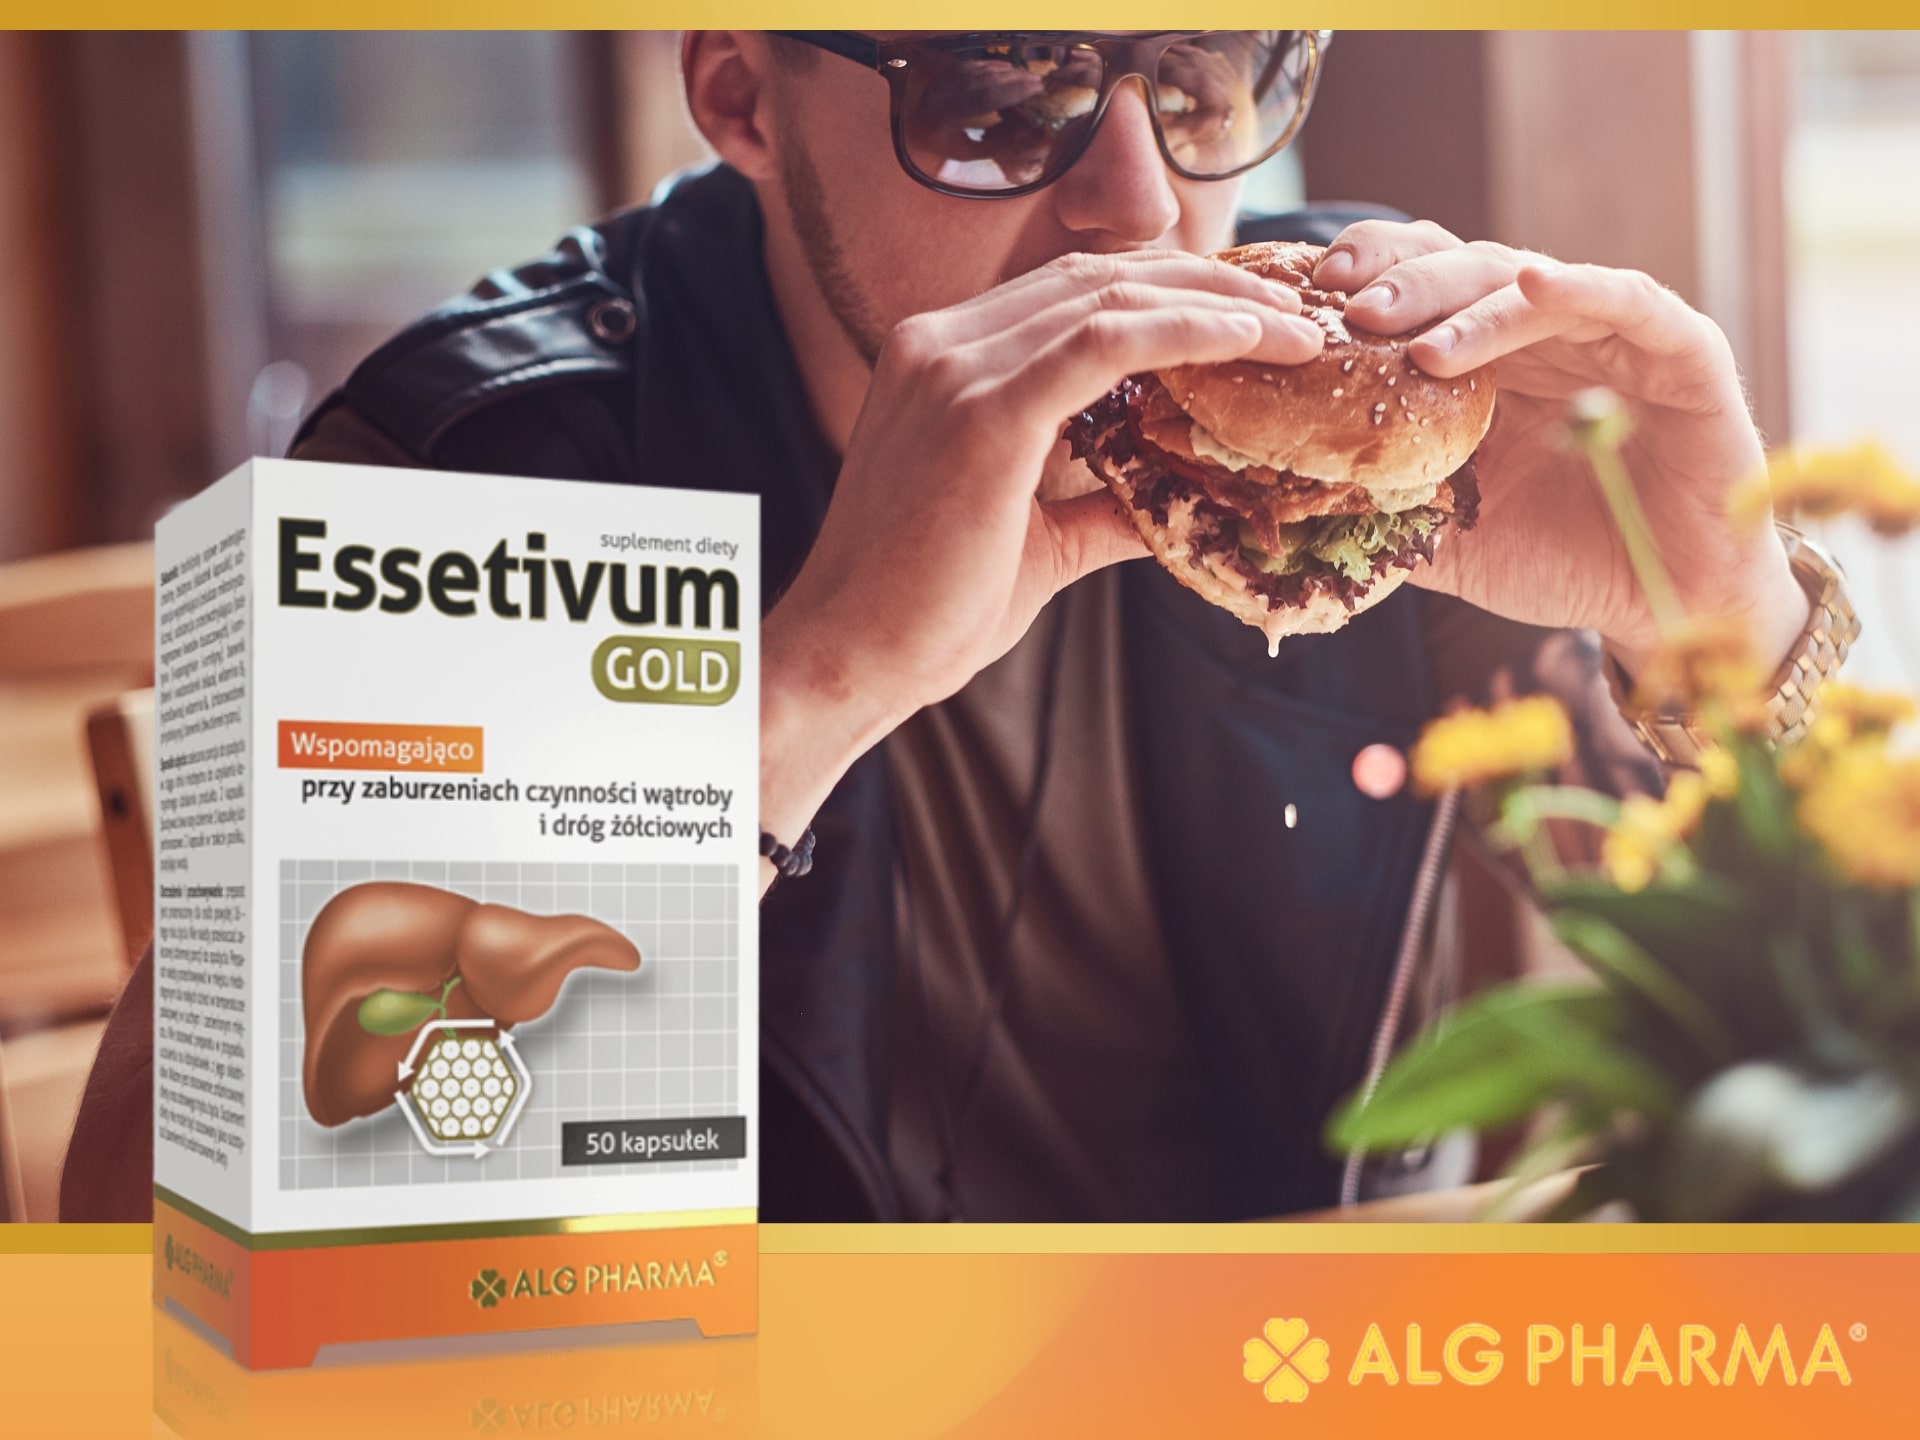 ALG Pharma - Essetivum Gold - wsparcie pracy wątroby